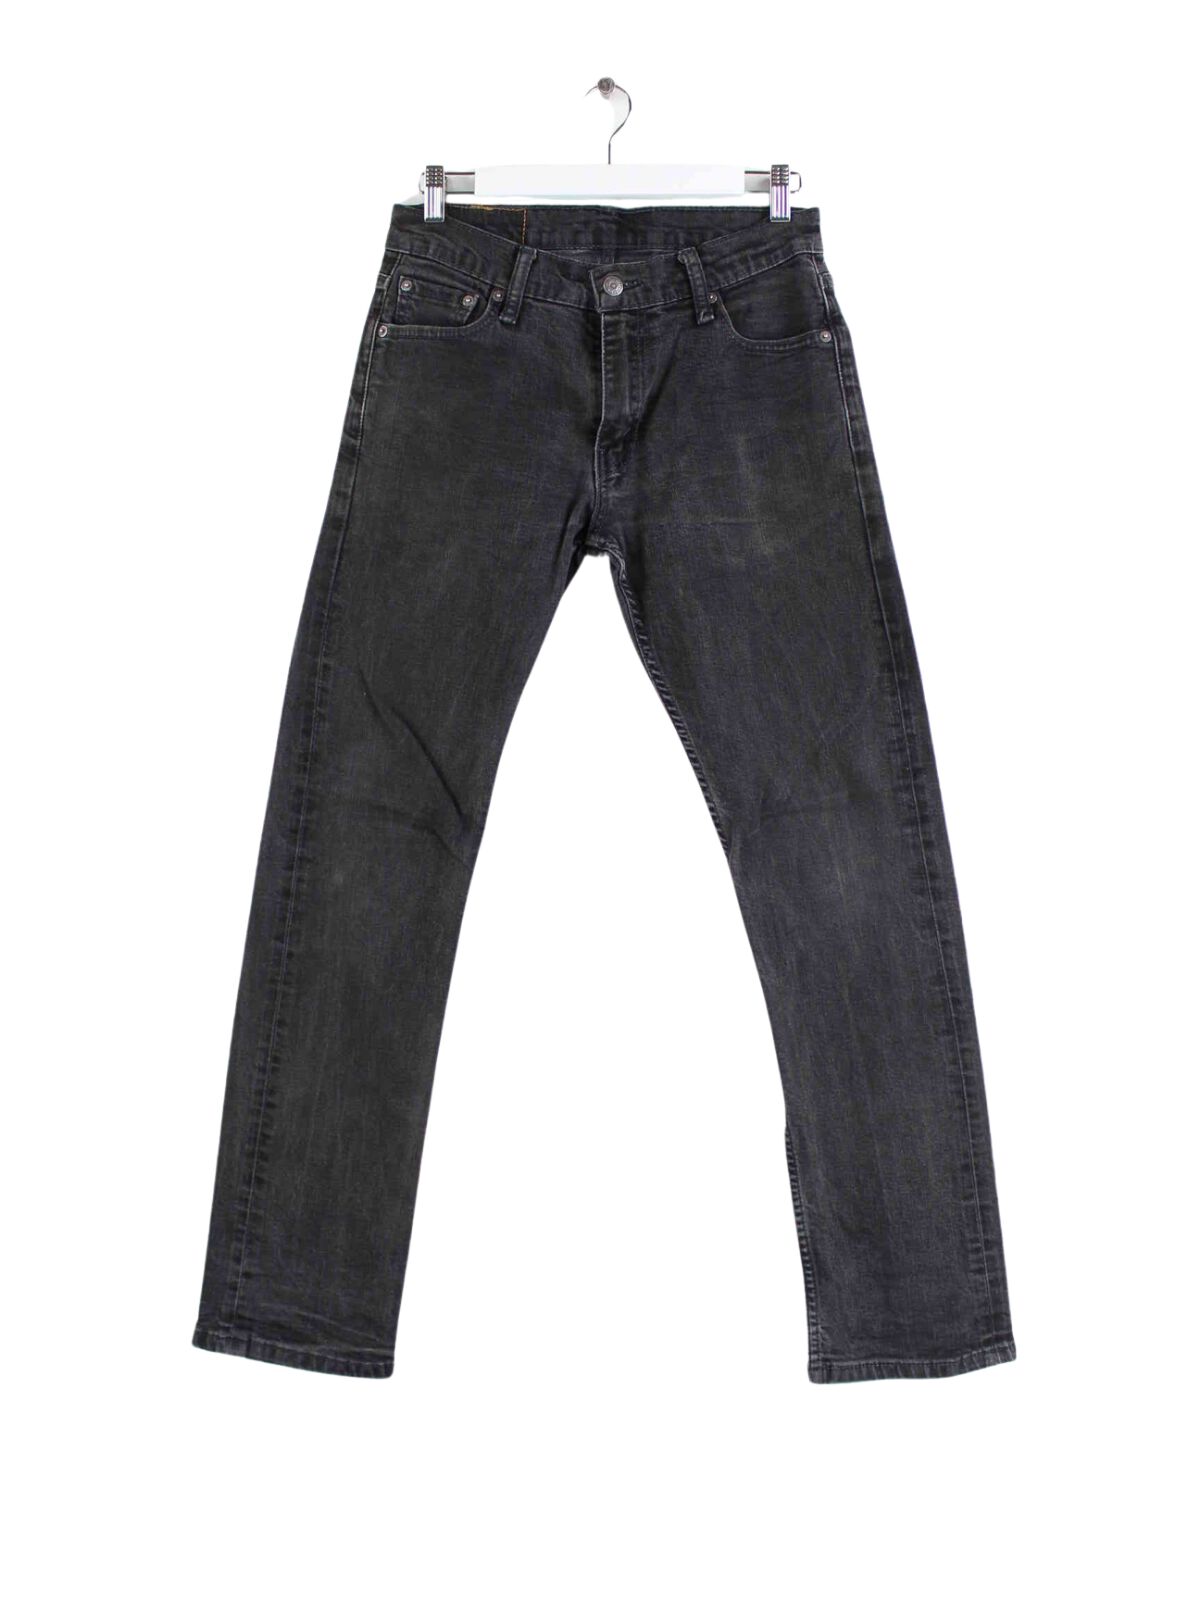 Levi's 504 Jeans Grau W30 L32 (front image)